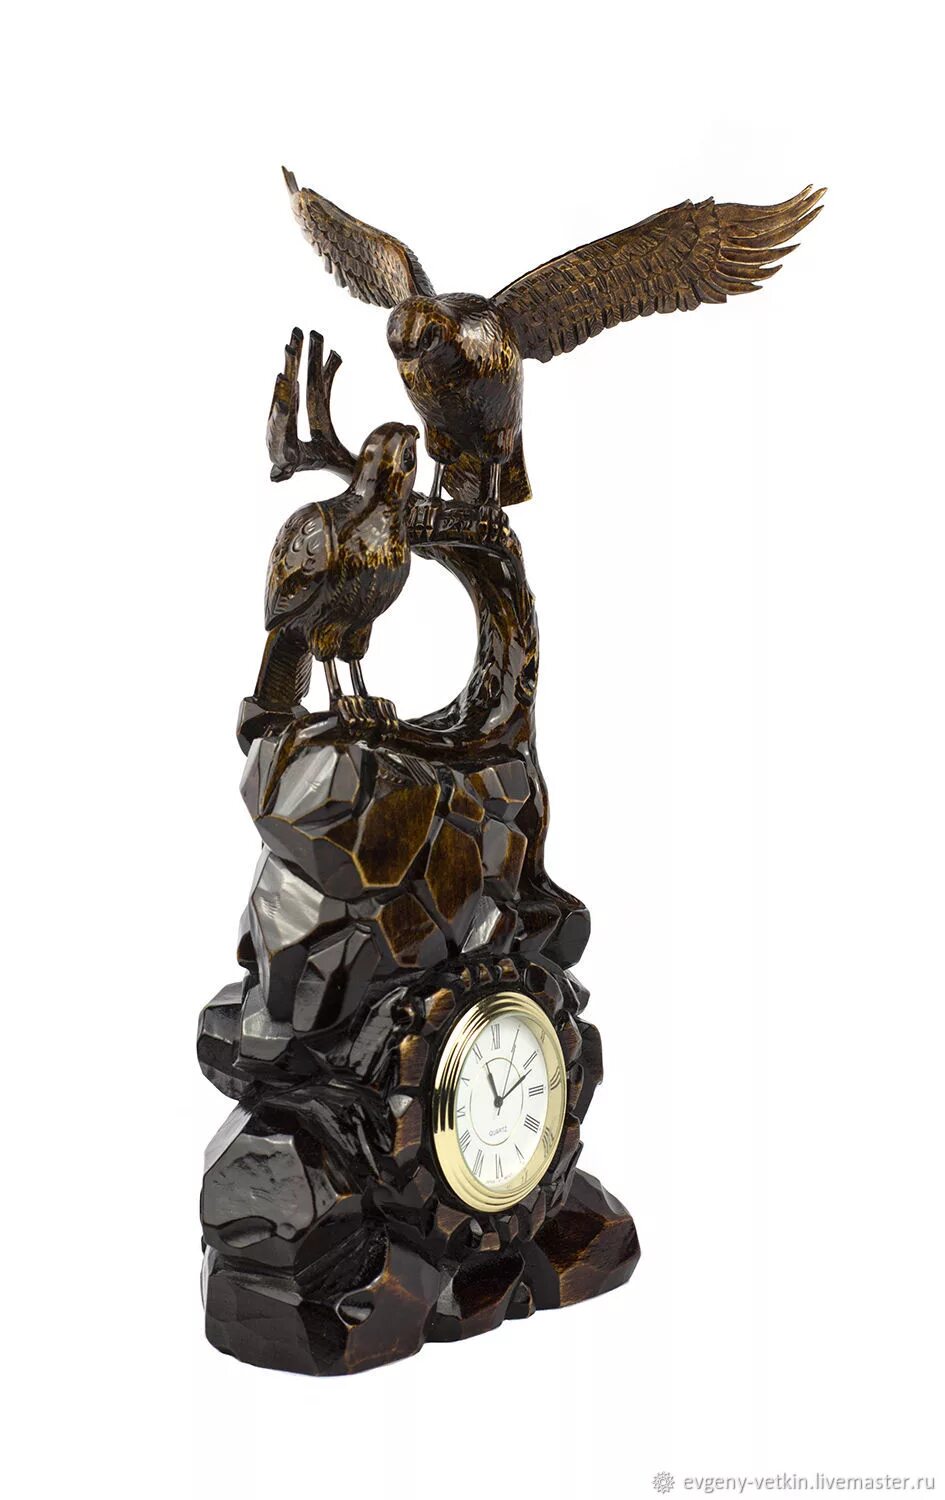 Часы с орлом. Часы Орловские настольные. Часы из дерева с орлом. Часы в Орлов. Прием часов орел